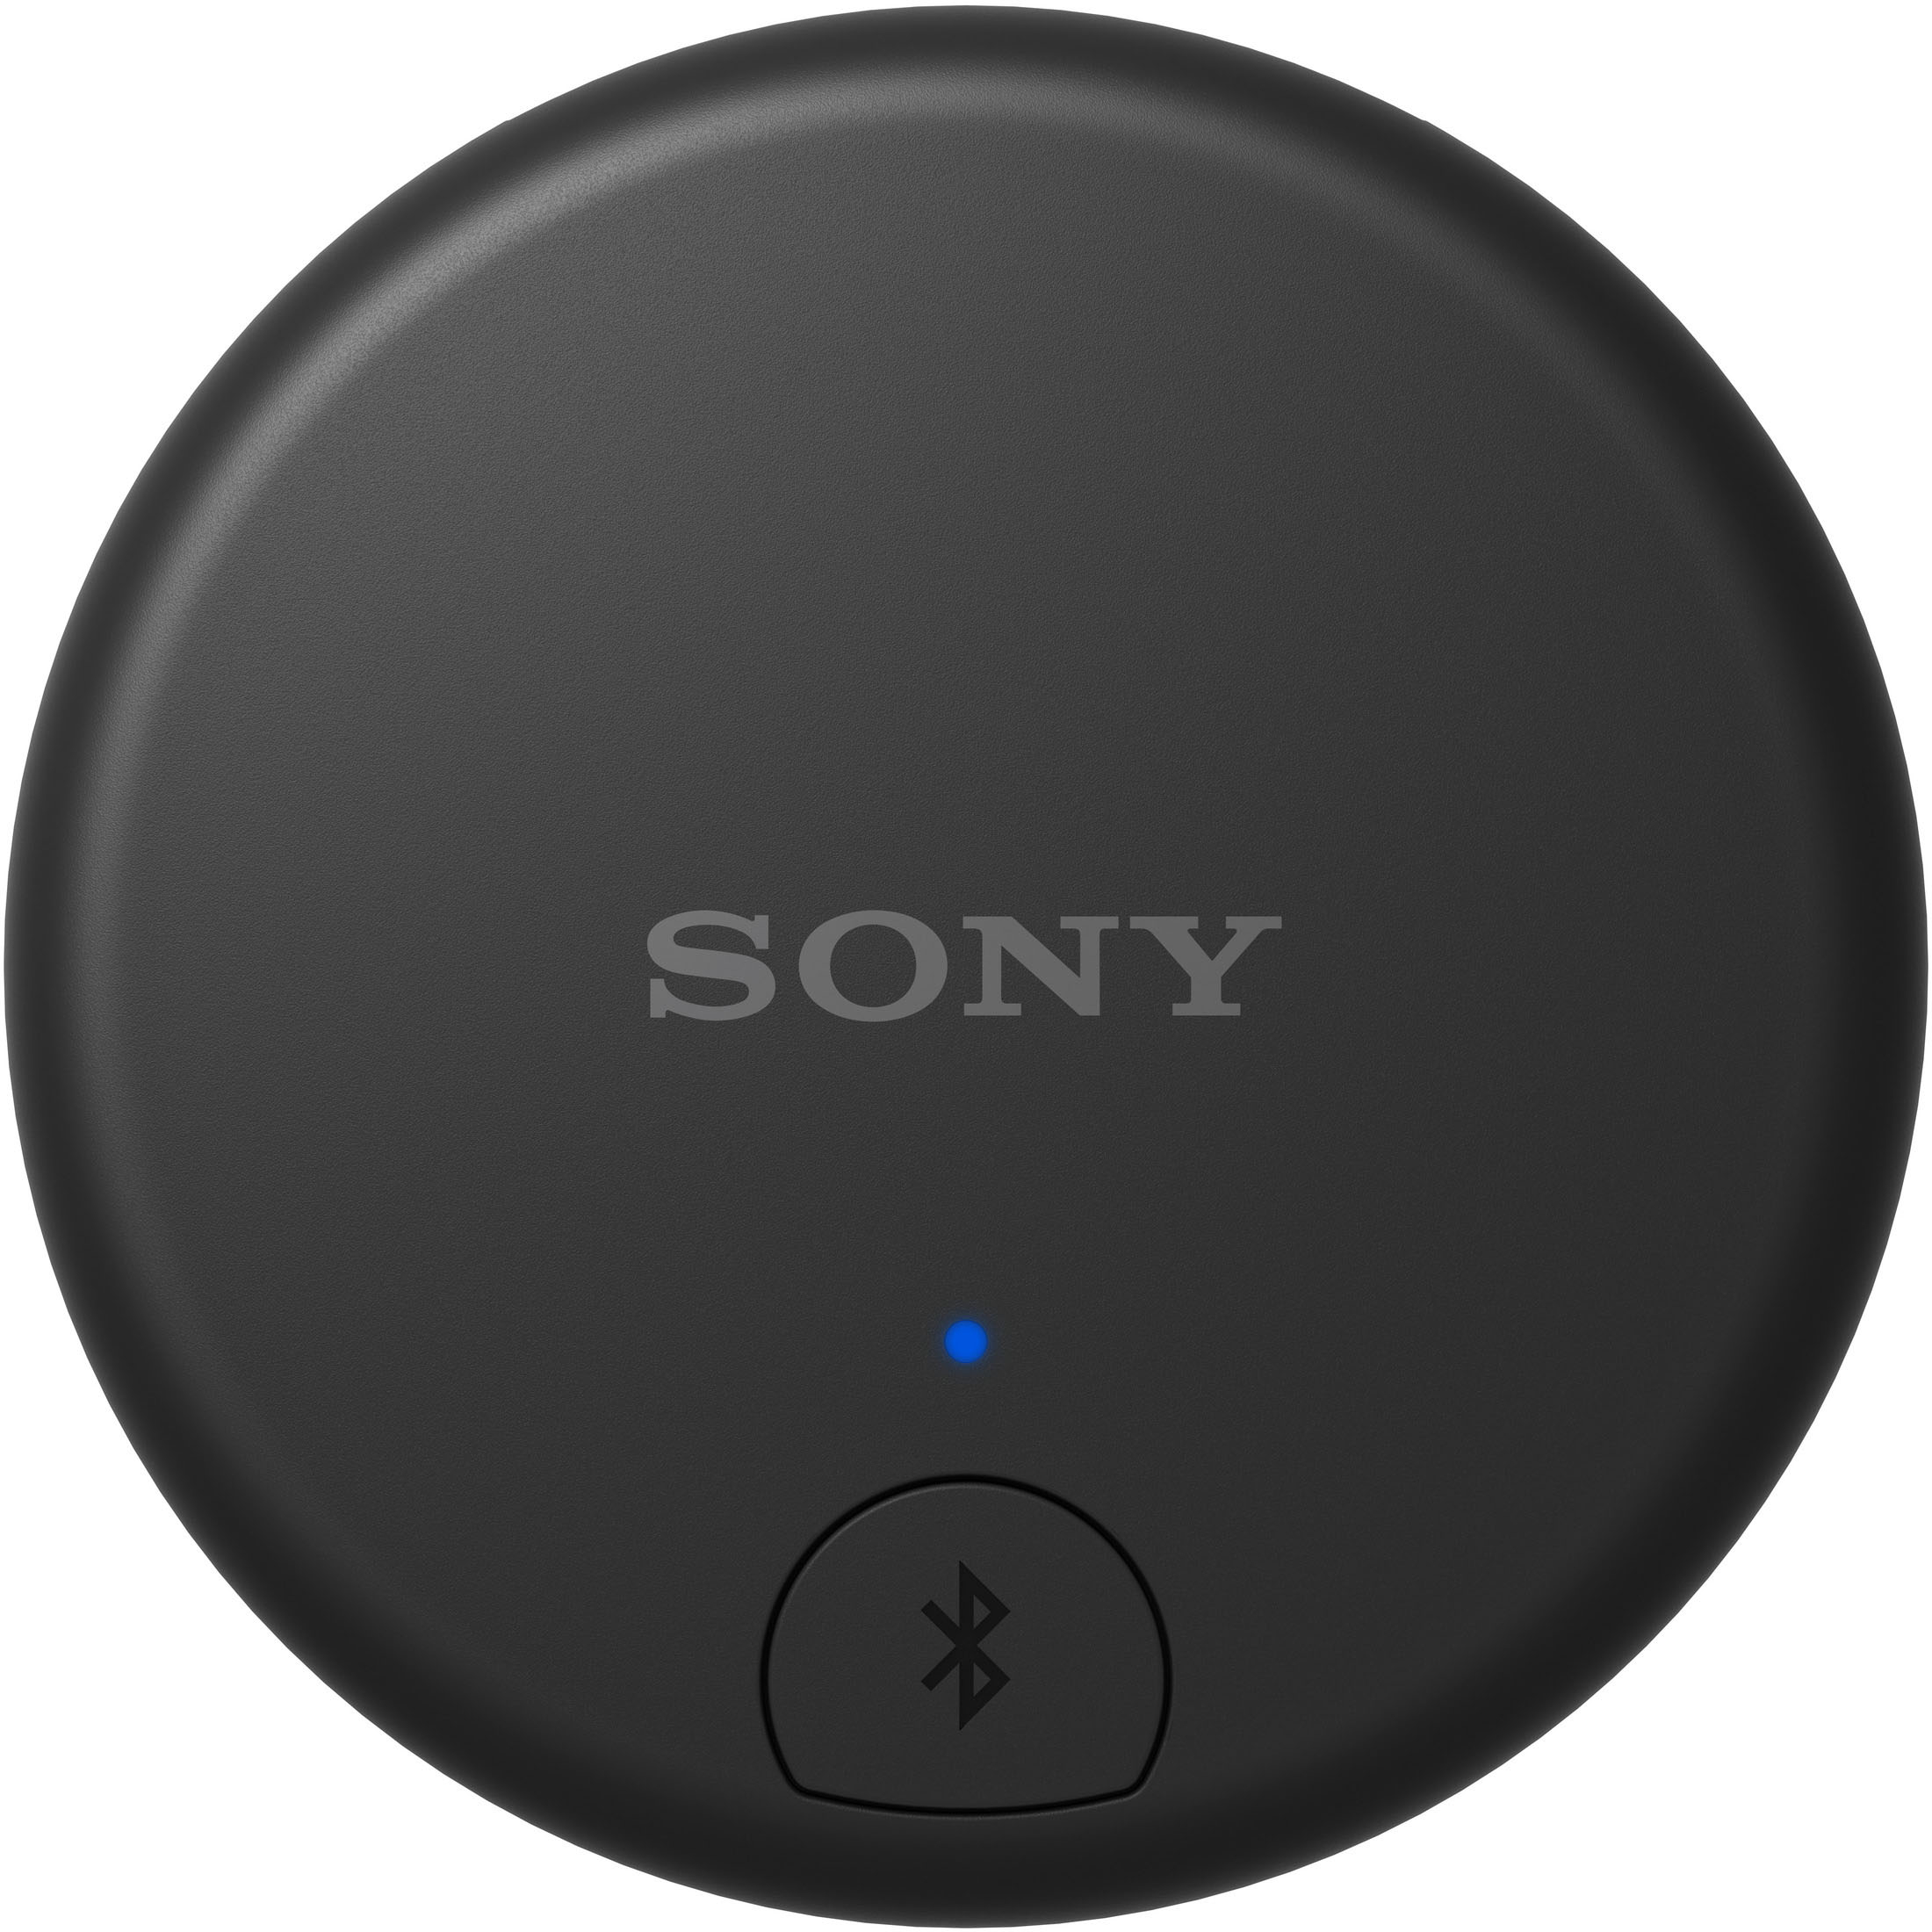 Sony WLANS7 Wireless TV Adapter Black WLANS7 - Best Buy